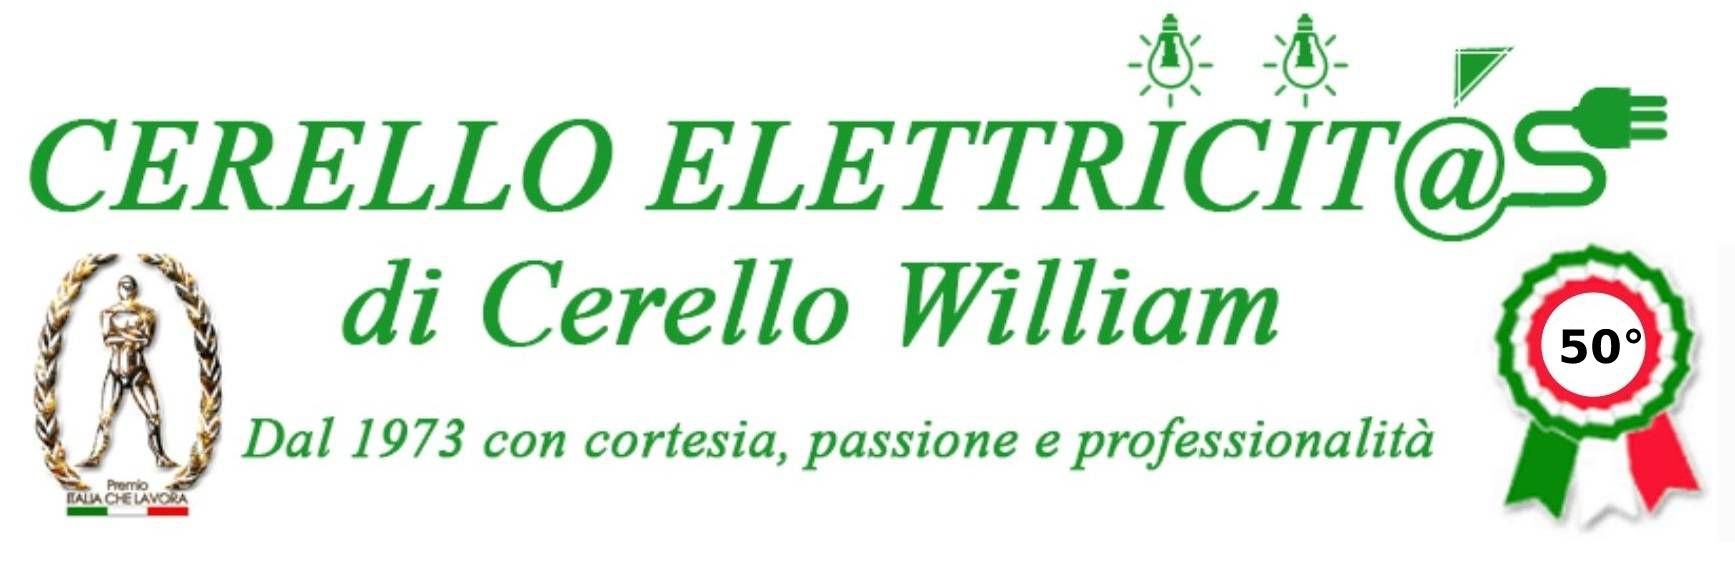 Cerello Elettricità di Cerello William - Logo